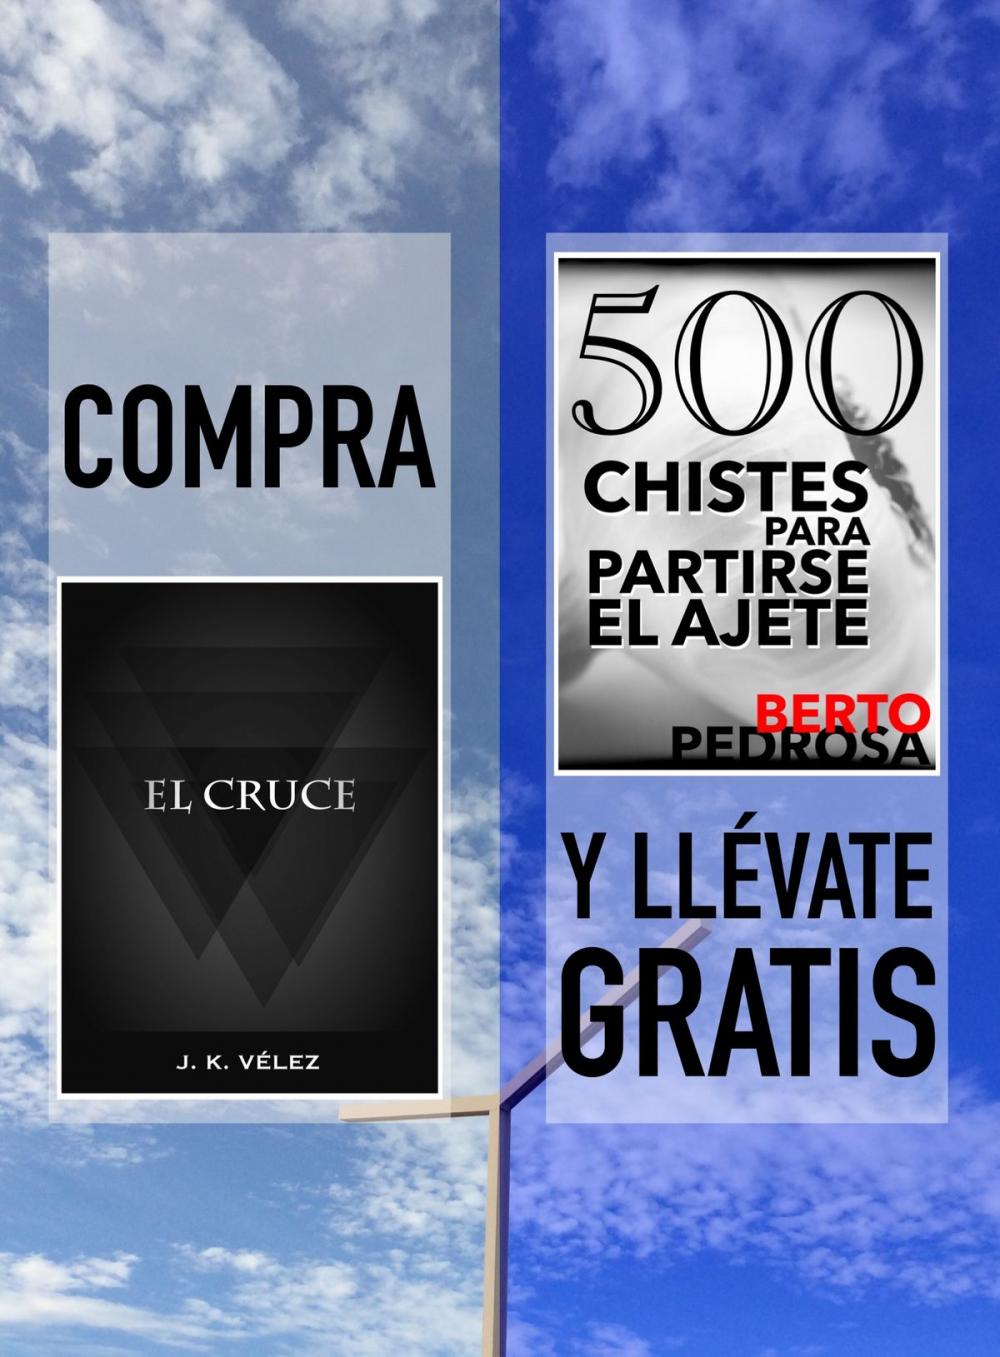 Big bigCover of Compra EL CRUCE y llévate gratis 500 CHISTES PARA PARTIRSE EL AJETE